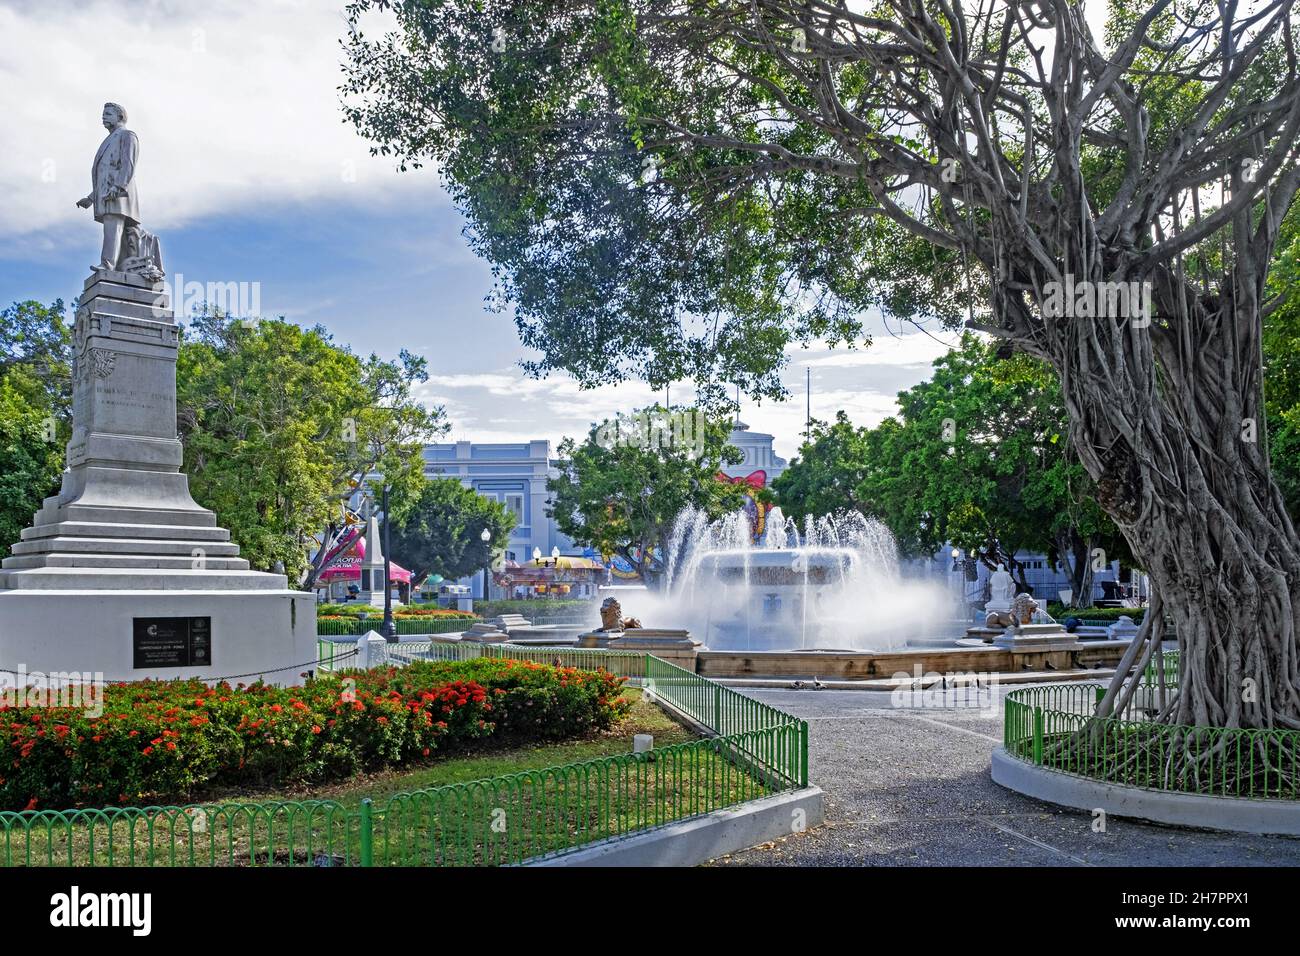 Fontaine Lions sur la Plaza Degetau et statue de Luis Muñoz Rivera sur la Plaza Las Delicias dans la ville de Ponce, Porto Rico, les grandes Antilles, les Caraïbes Banque D'Images